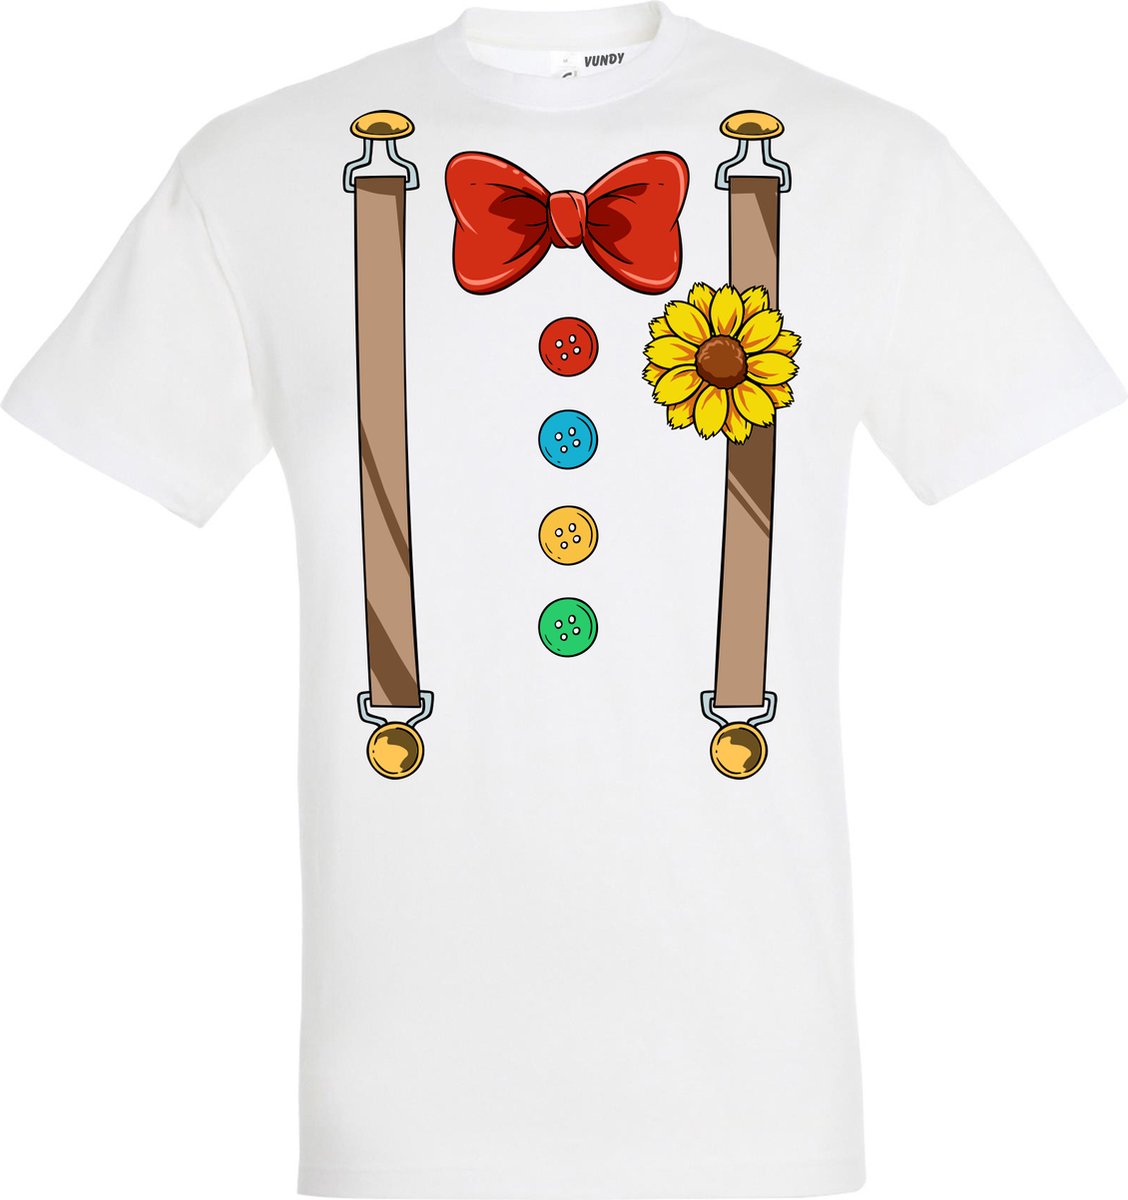 T-shirt Bretels Kostuum | Carnaval | Carnavalskleding Dames Heren | Wit | maat S